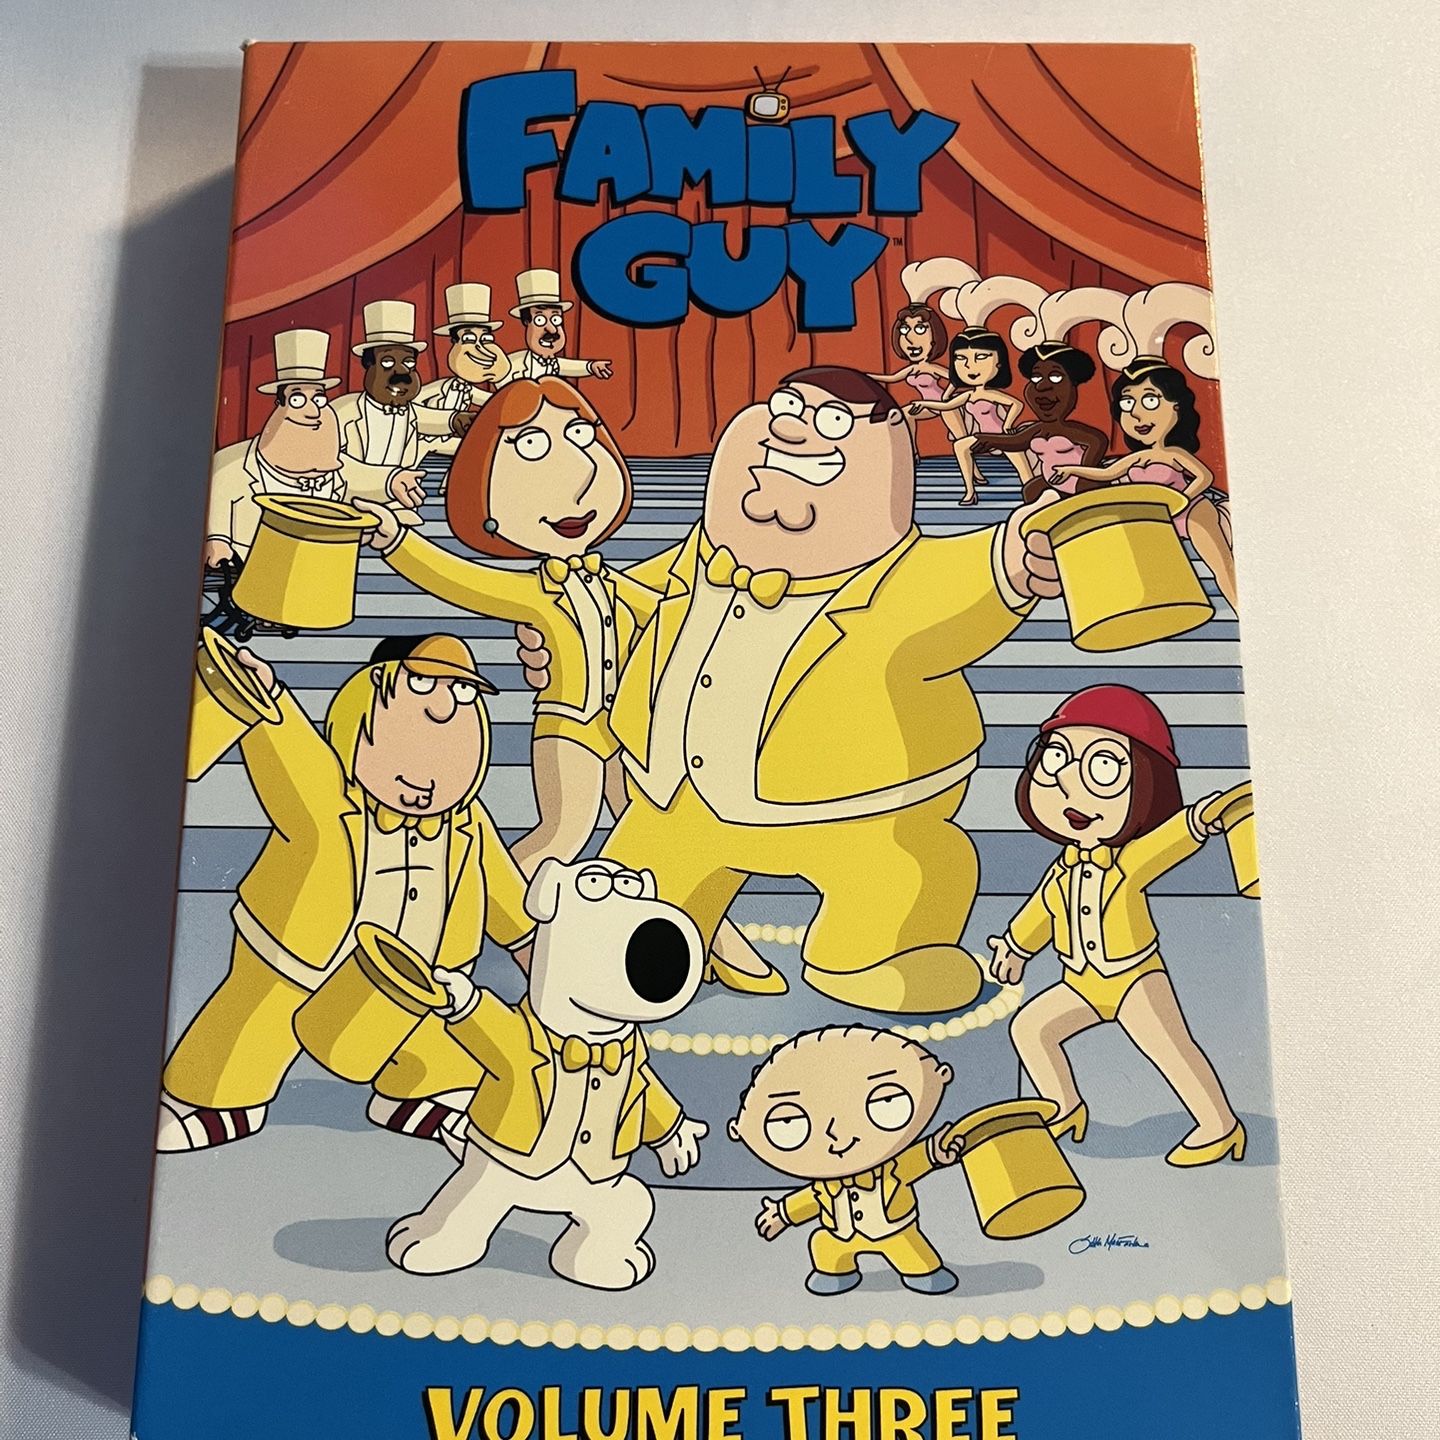 Family Guy Volume Three DVD Set (2005, Fox) 13 Episodes on 3